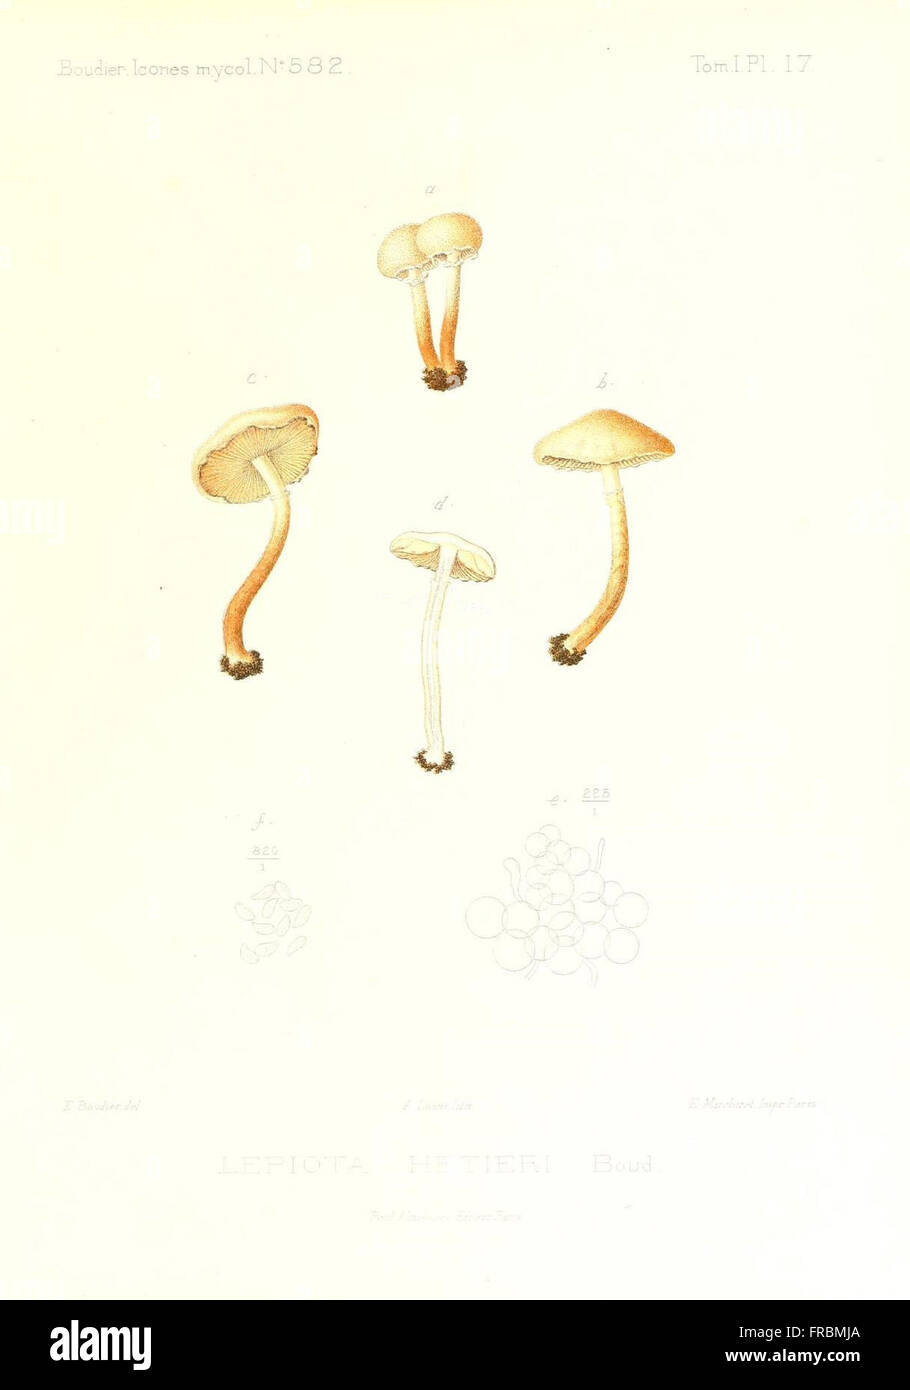 Icones mycologicC3A6, ou Iconographie des champignons de France principalement Discomycetes (Pl. 17) Stock Photo